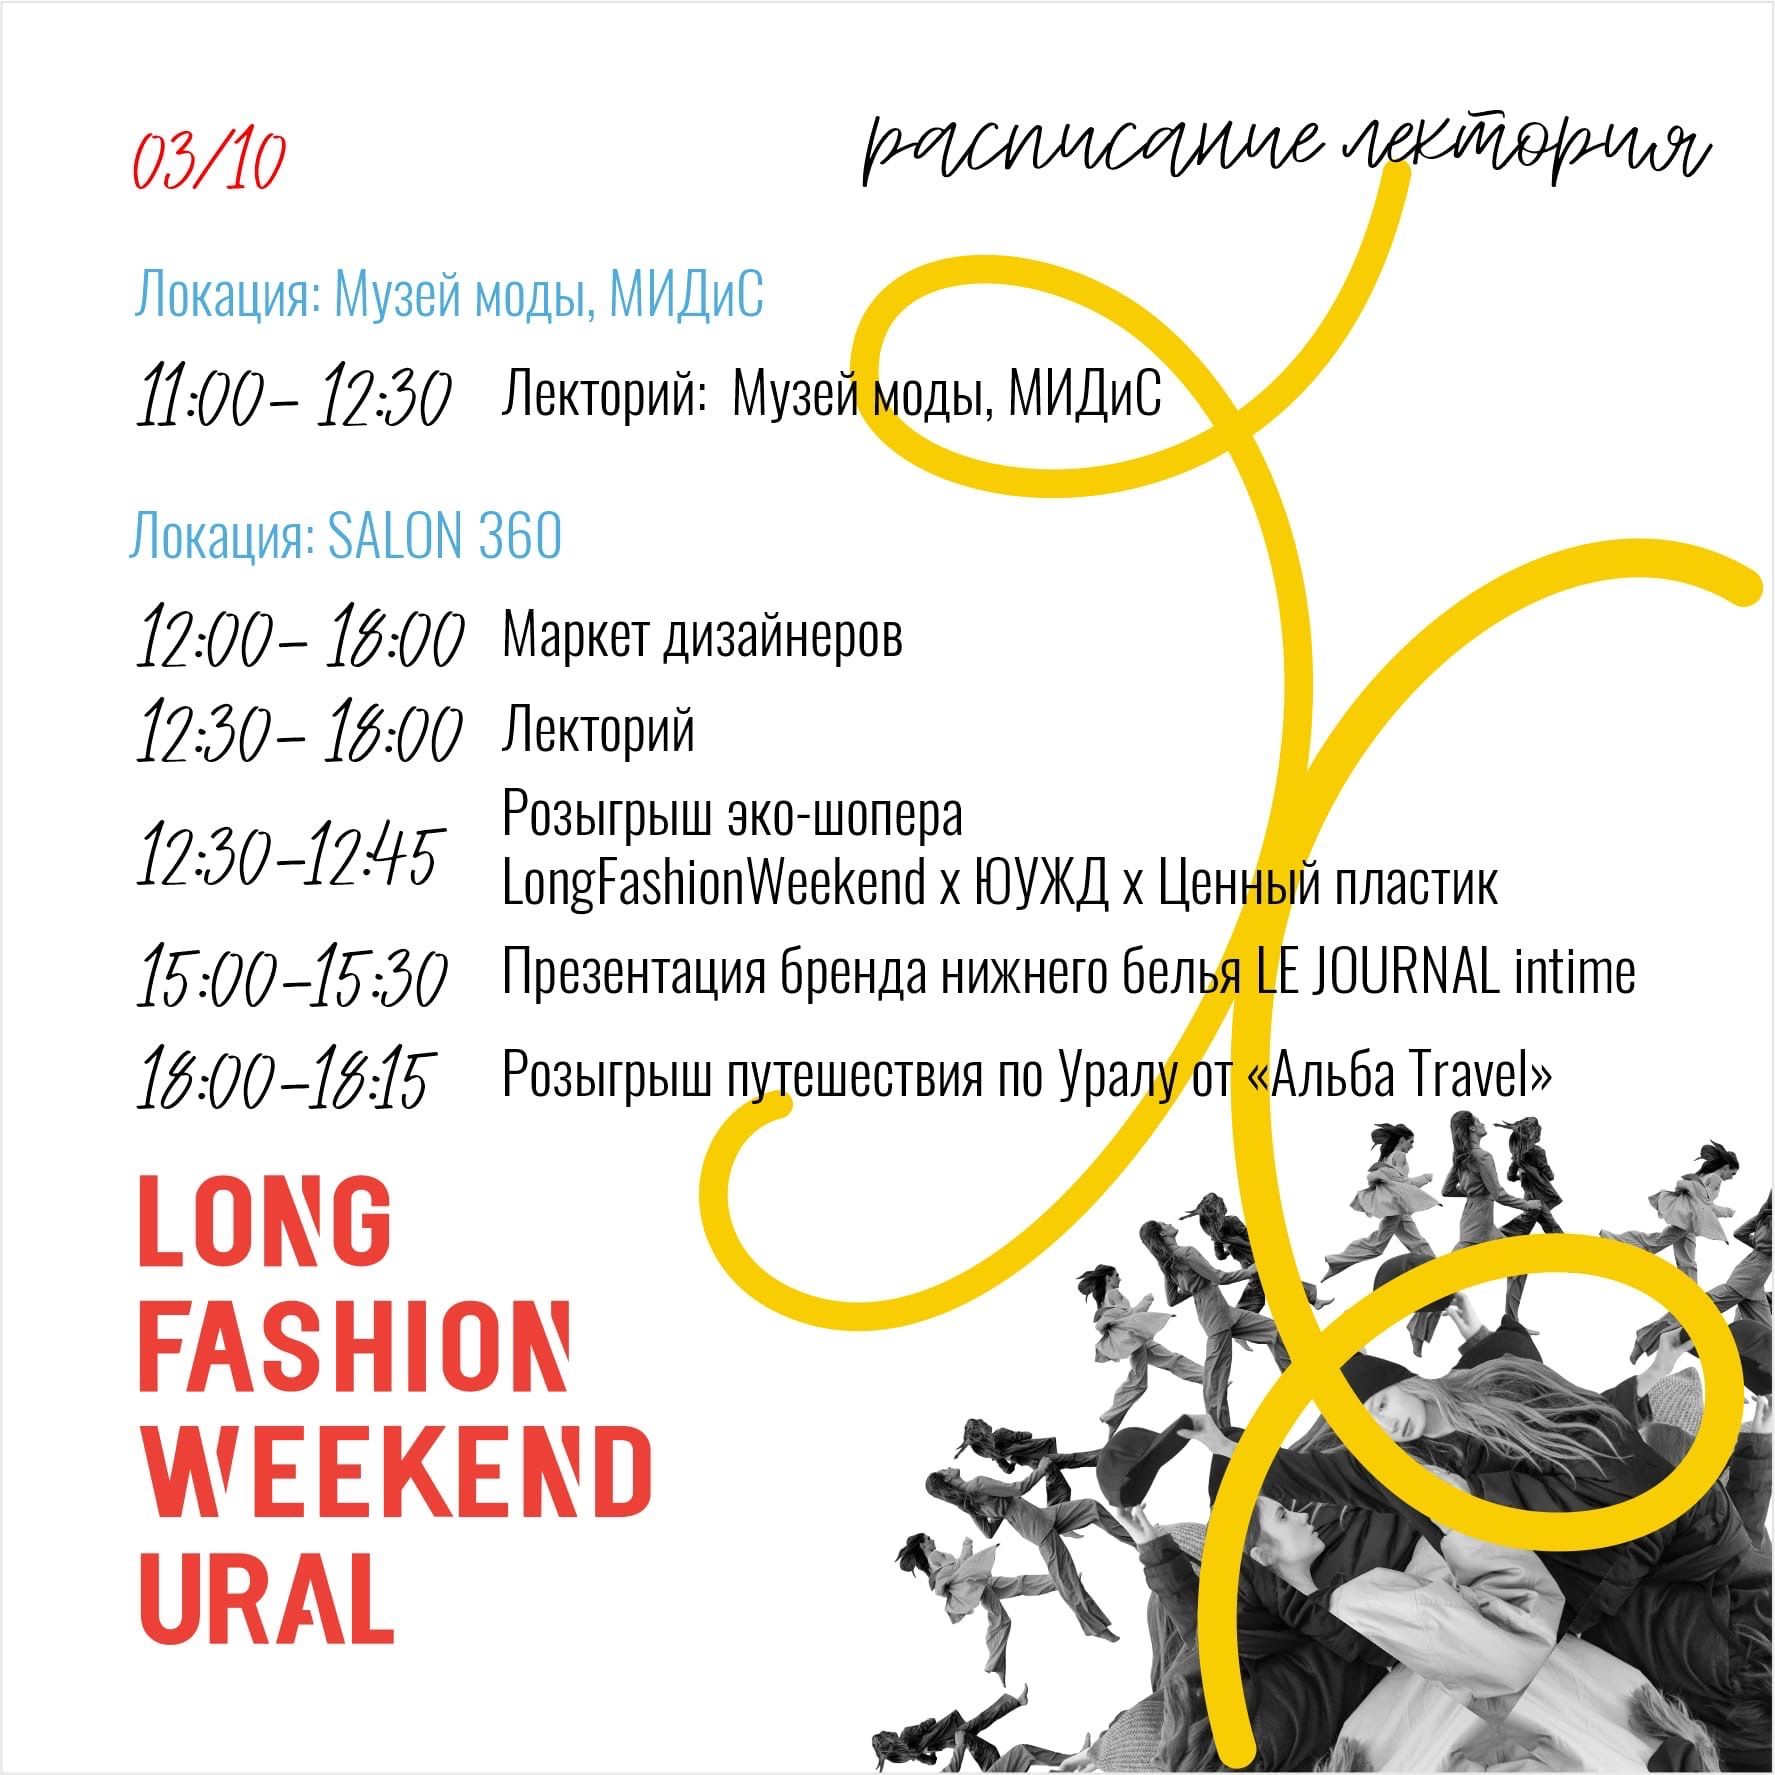 Второй день LongFashionWeekend в Челябинске будет посвящён общению и образованию